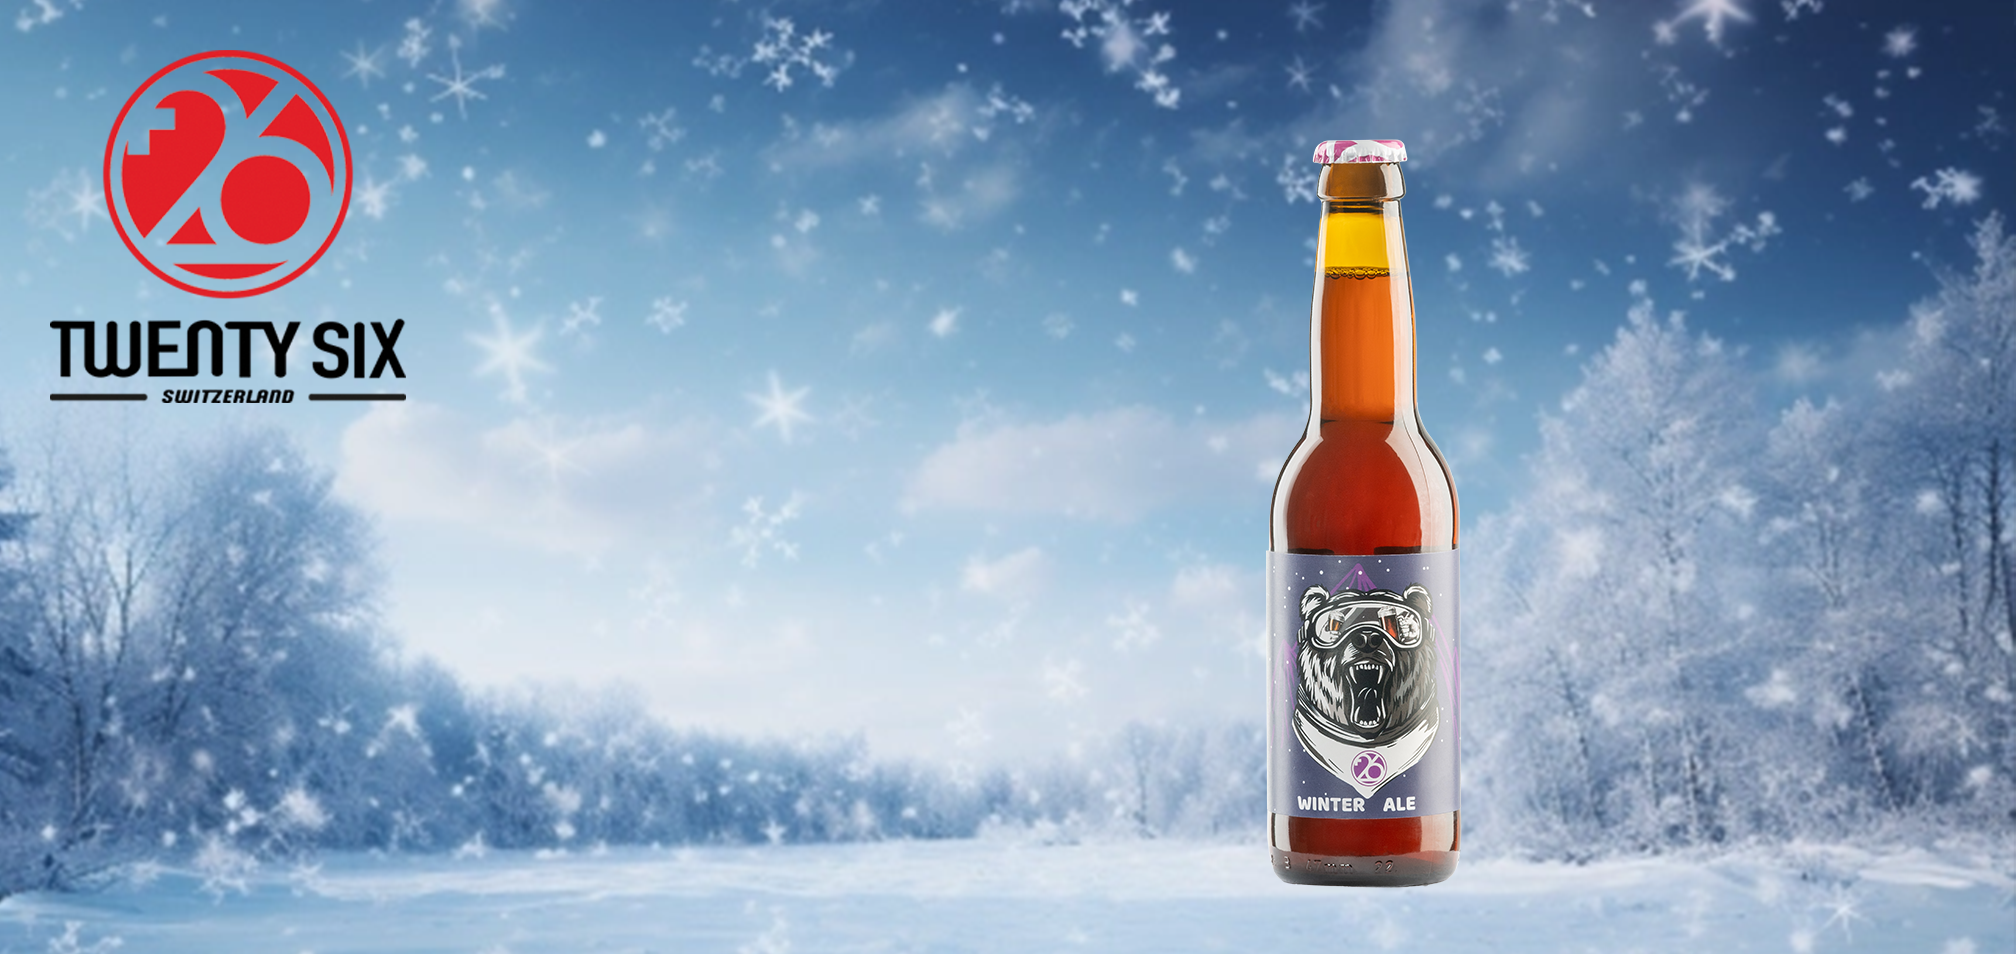 Twenty Six Winter Ale - bière artisanale suisse